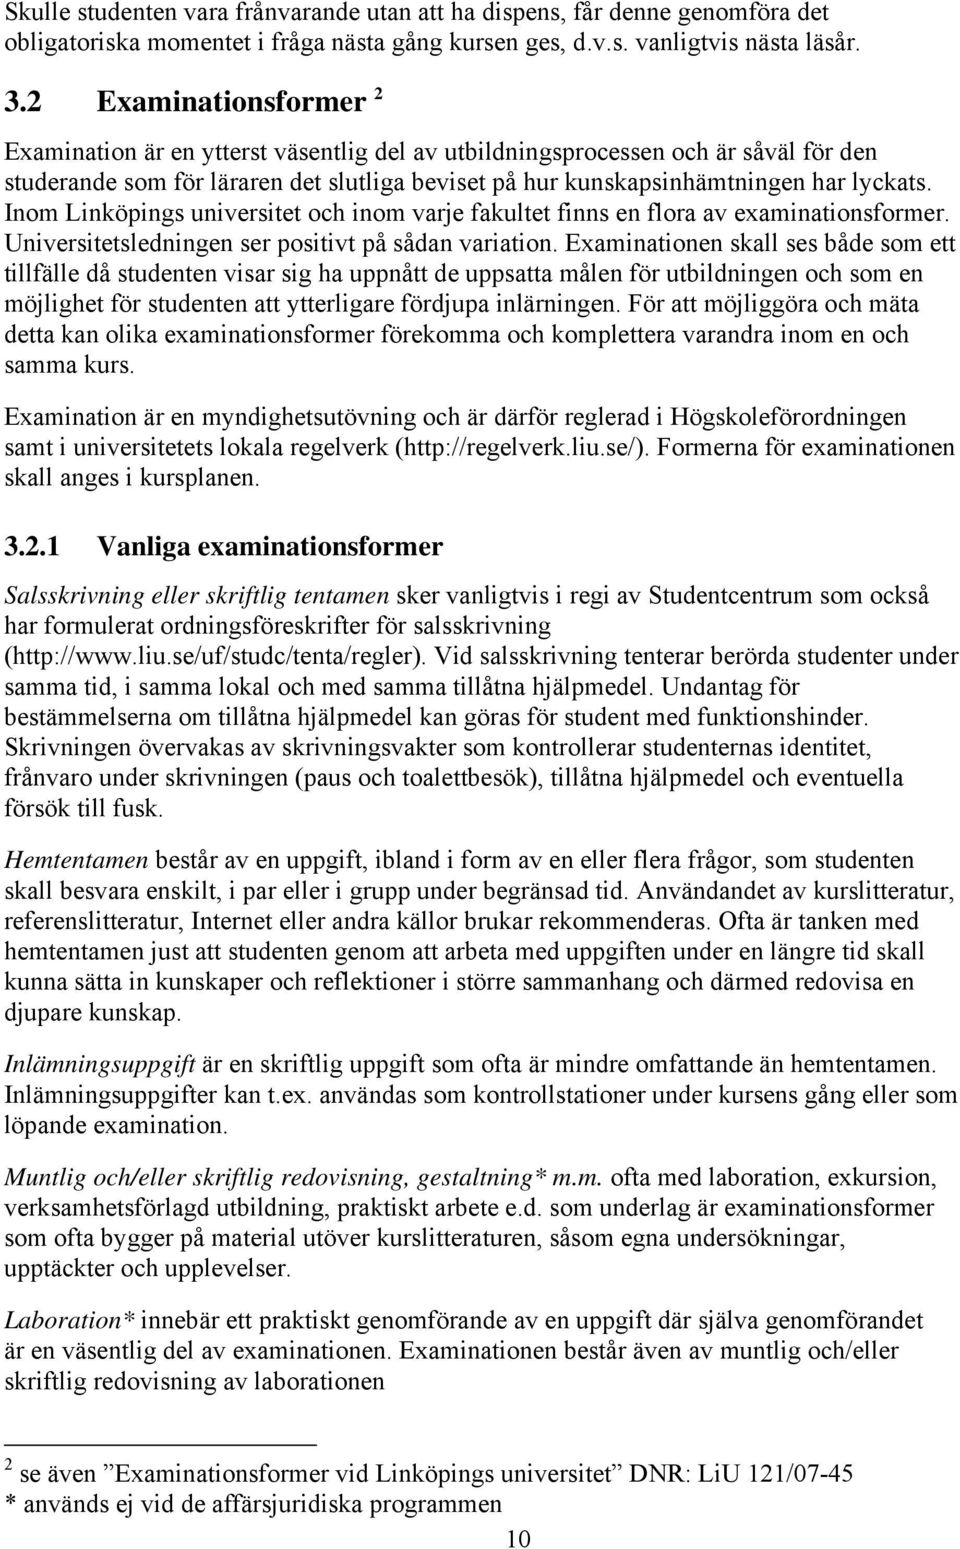 Inom Linköpings universitet och inom varje fakultet finns en flora av examinationsformer. Universitetsledningen ser positivt på sådan variation.